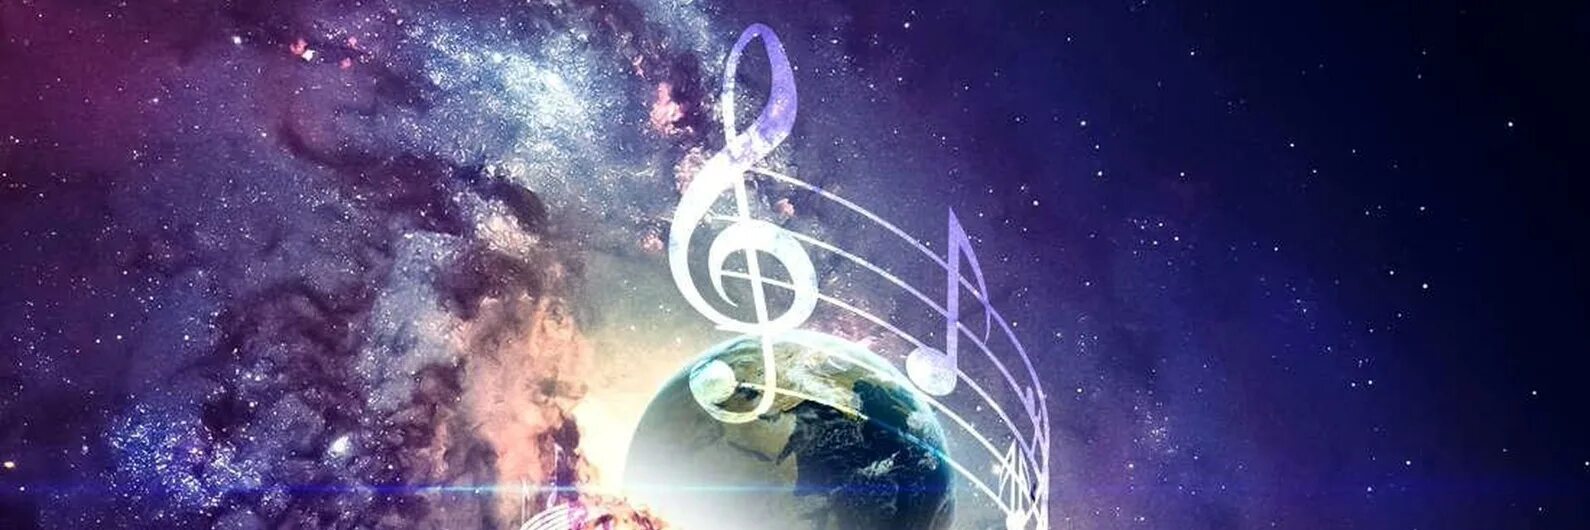 Музыкальная Планета. Музыкальная Планета рисунок. Фон планеты. Картинки планеты с музыкальной тематикой.